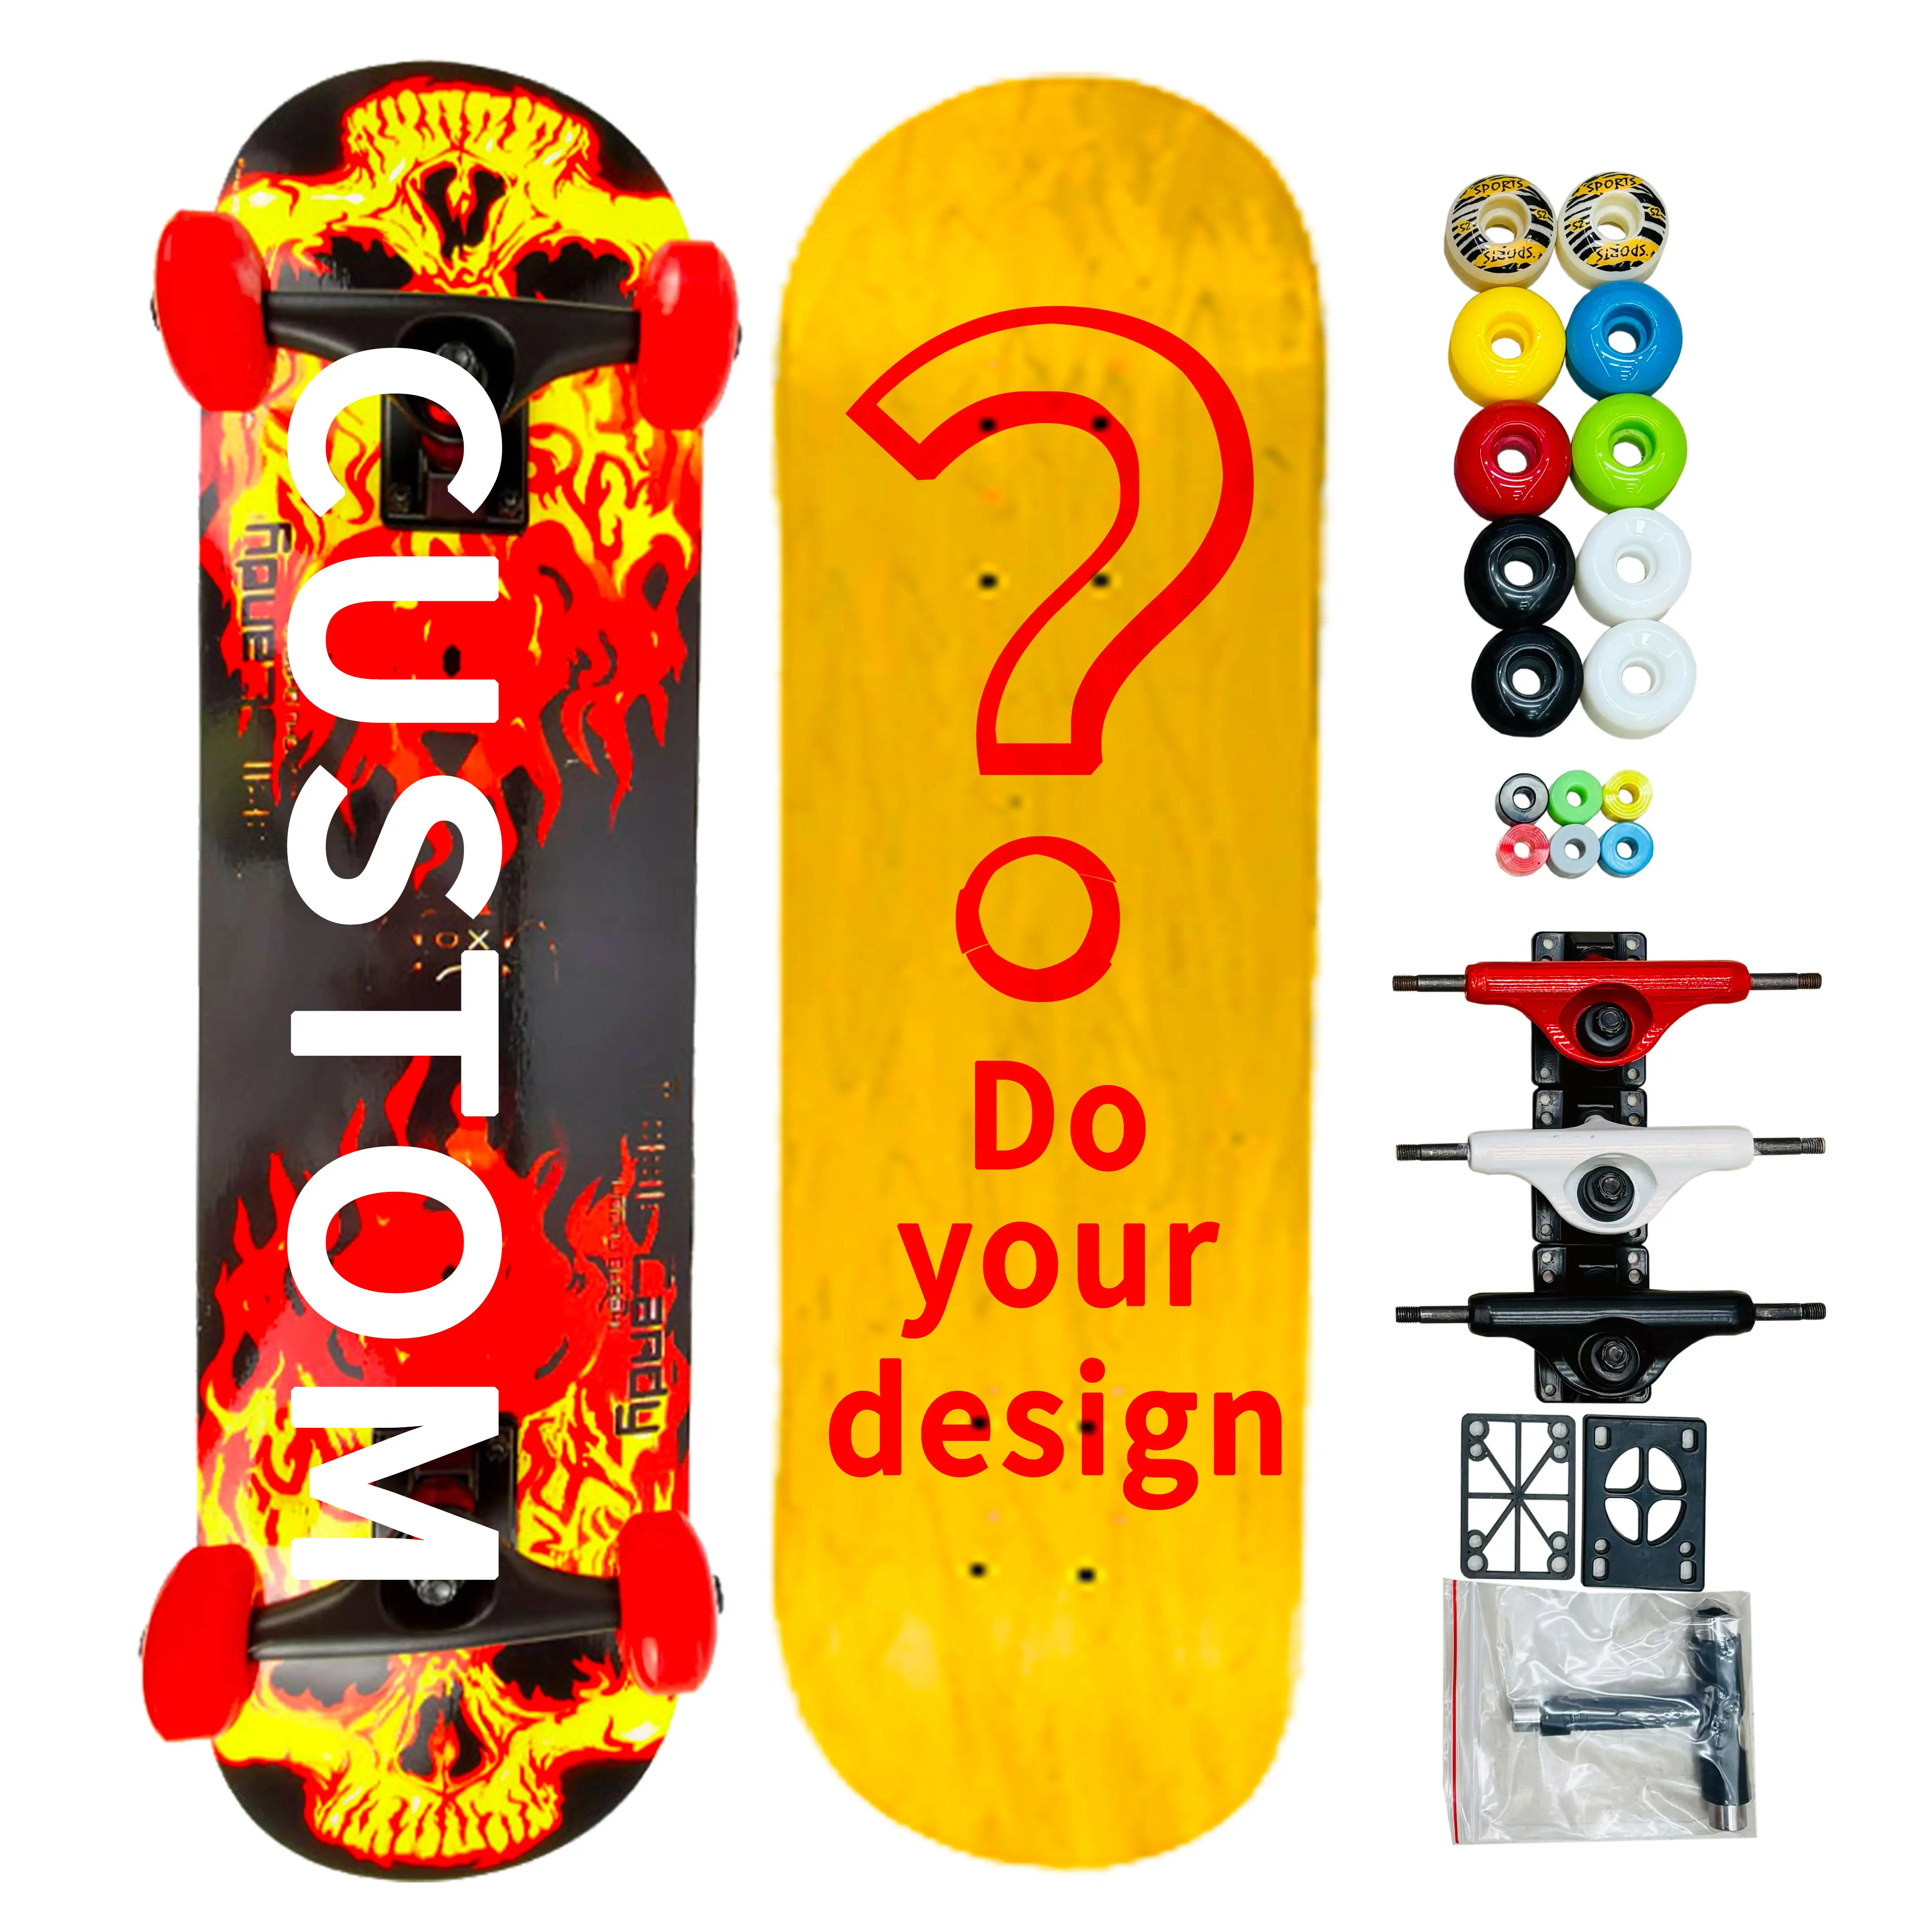 Monopatines y patines Juego de rodamientos para adultos Chaussure De Supplier Board Fastest o Skateboard Grip Tape